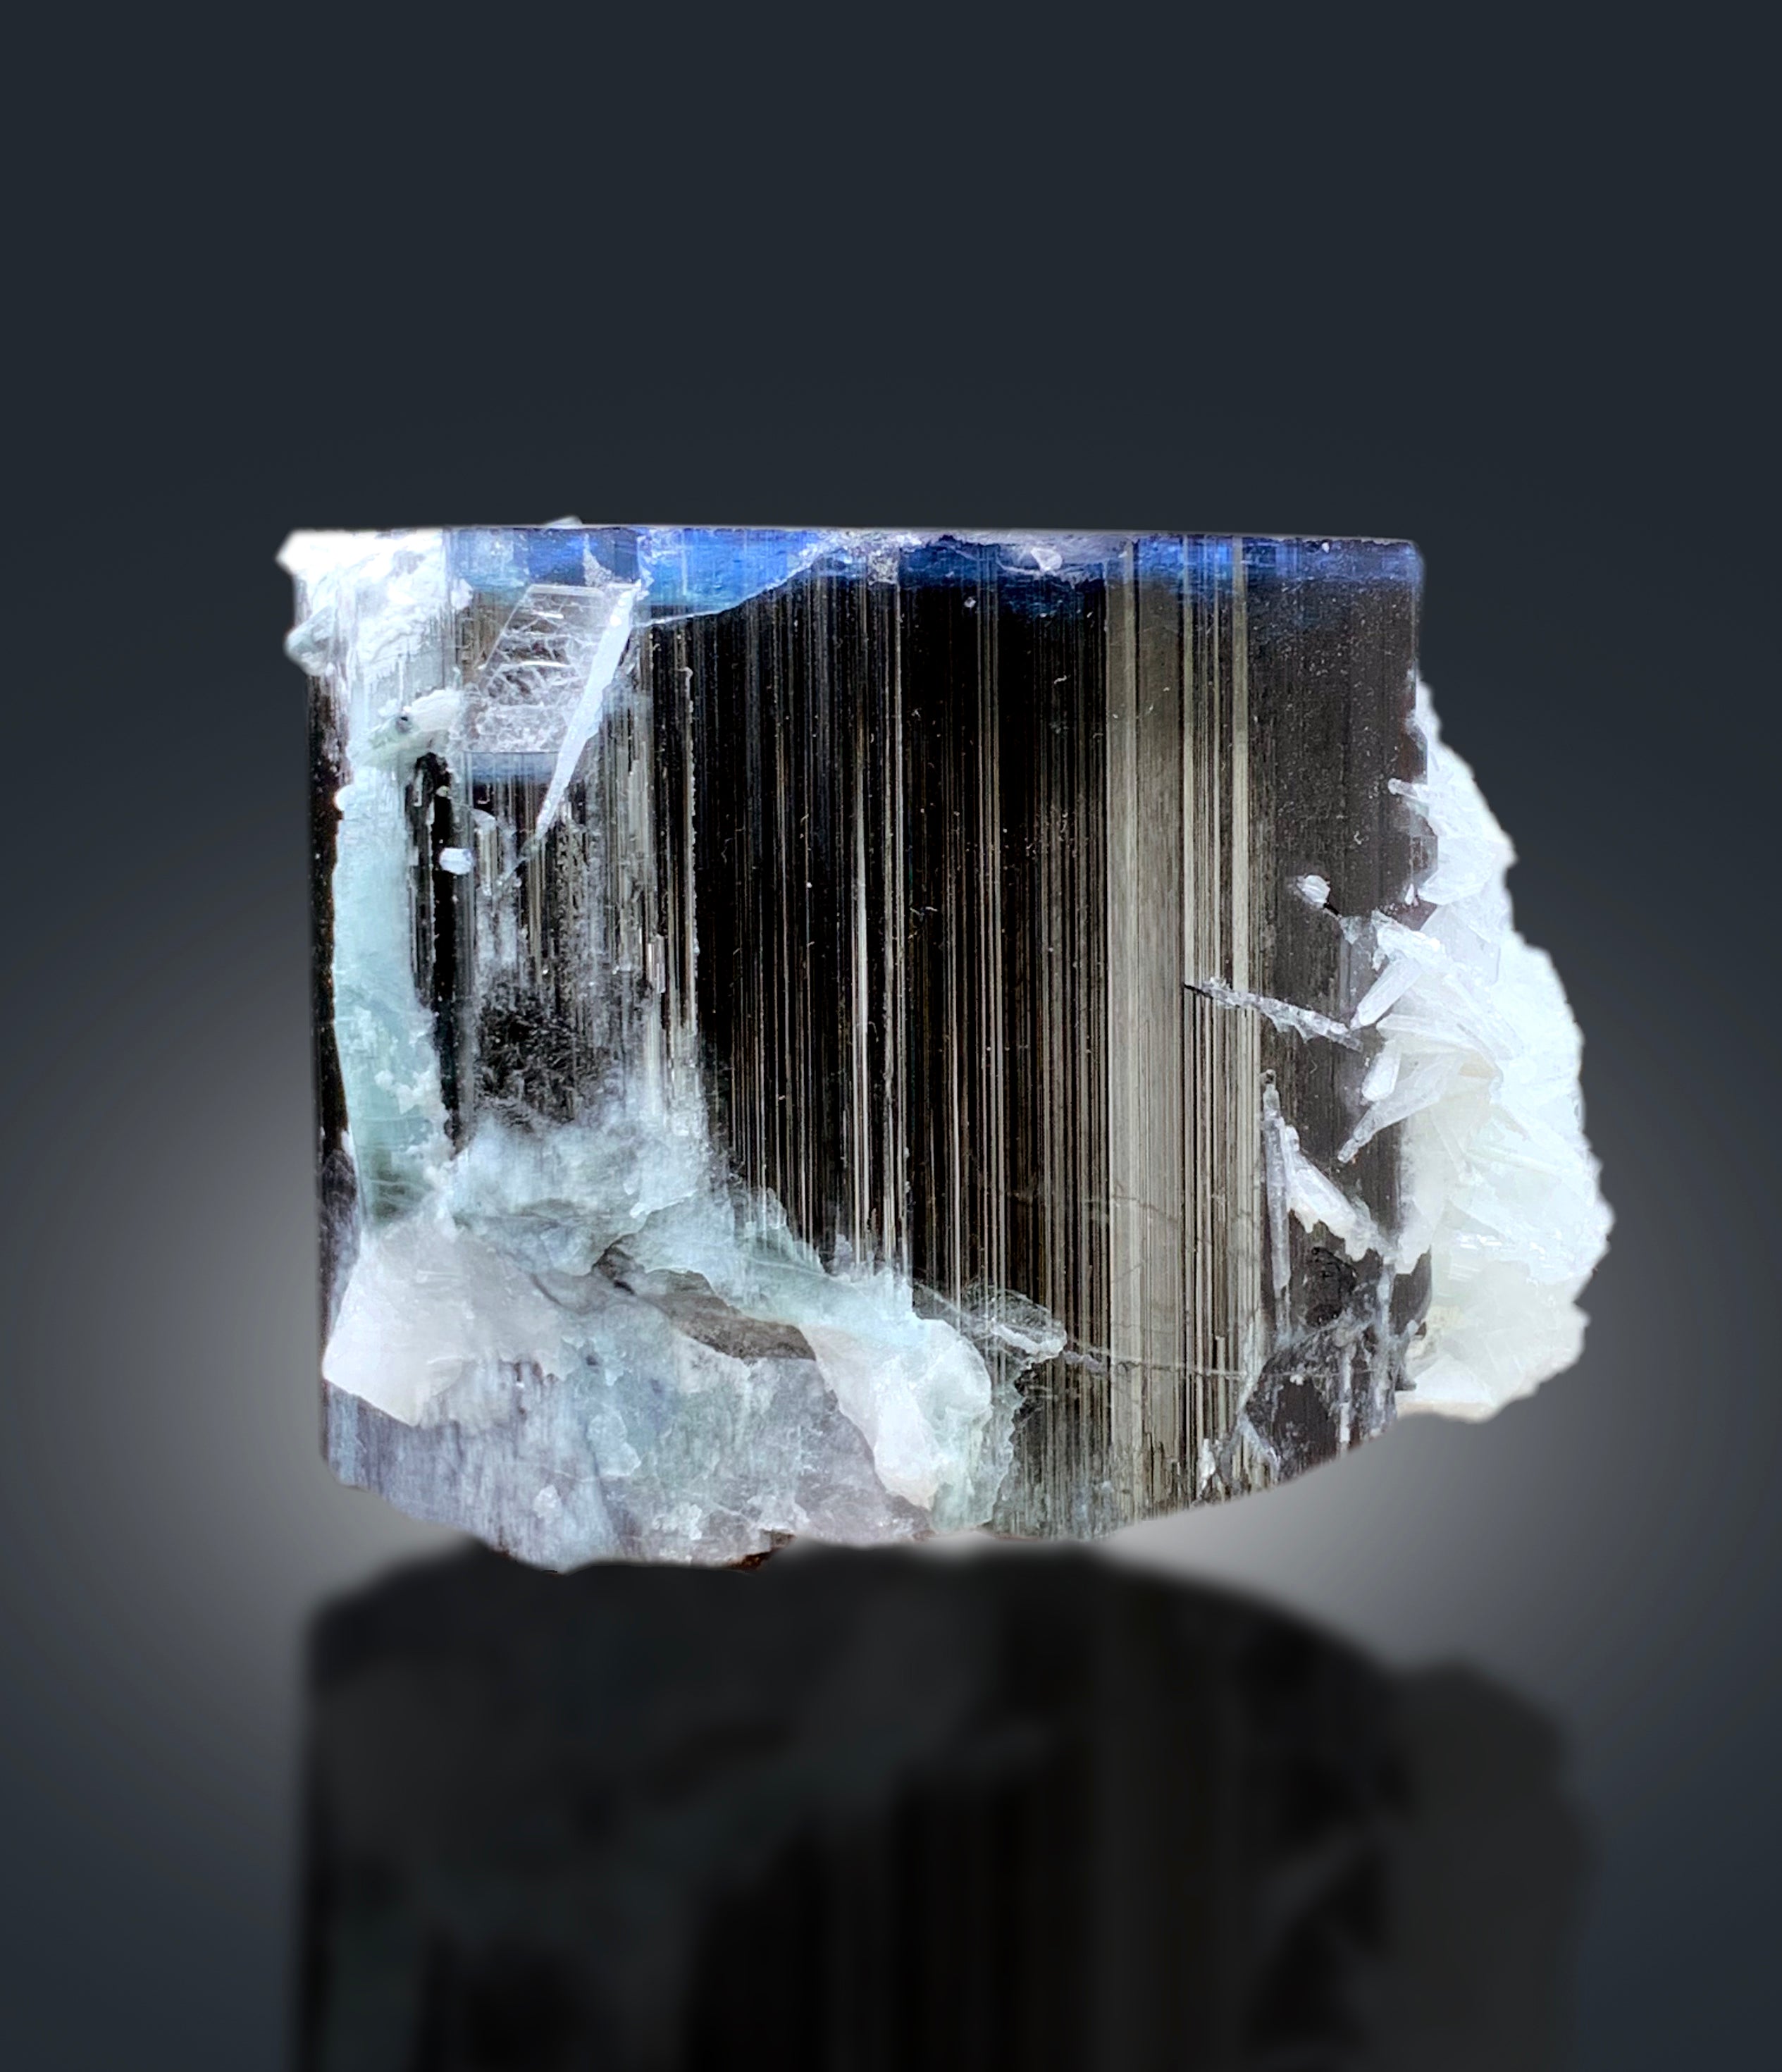 Natural Blue Cap Tourmaline with Cleavelandite Albite, Tourmaline Crystal, Paprok Tourmaline, Tourmaline Specimen - 602 gram